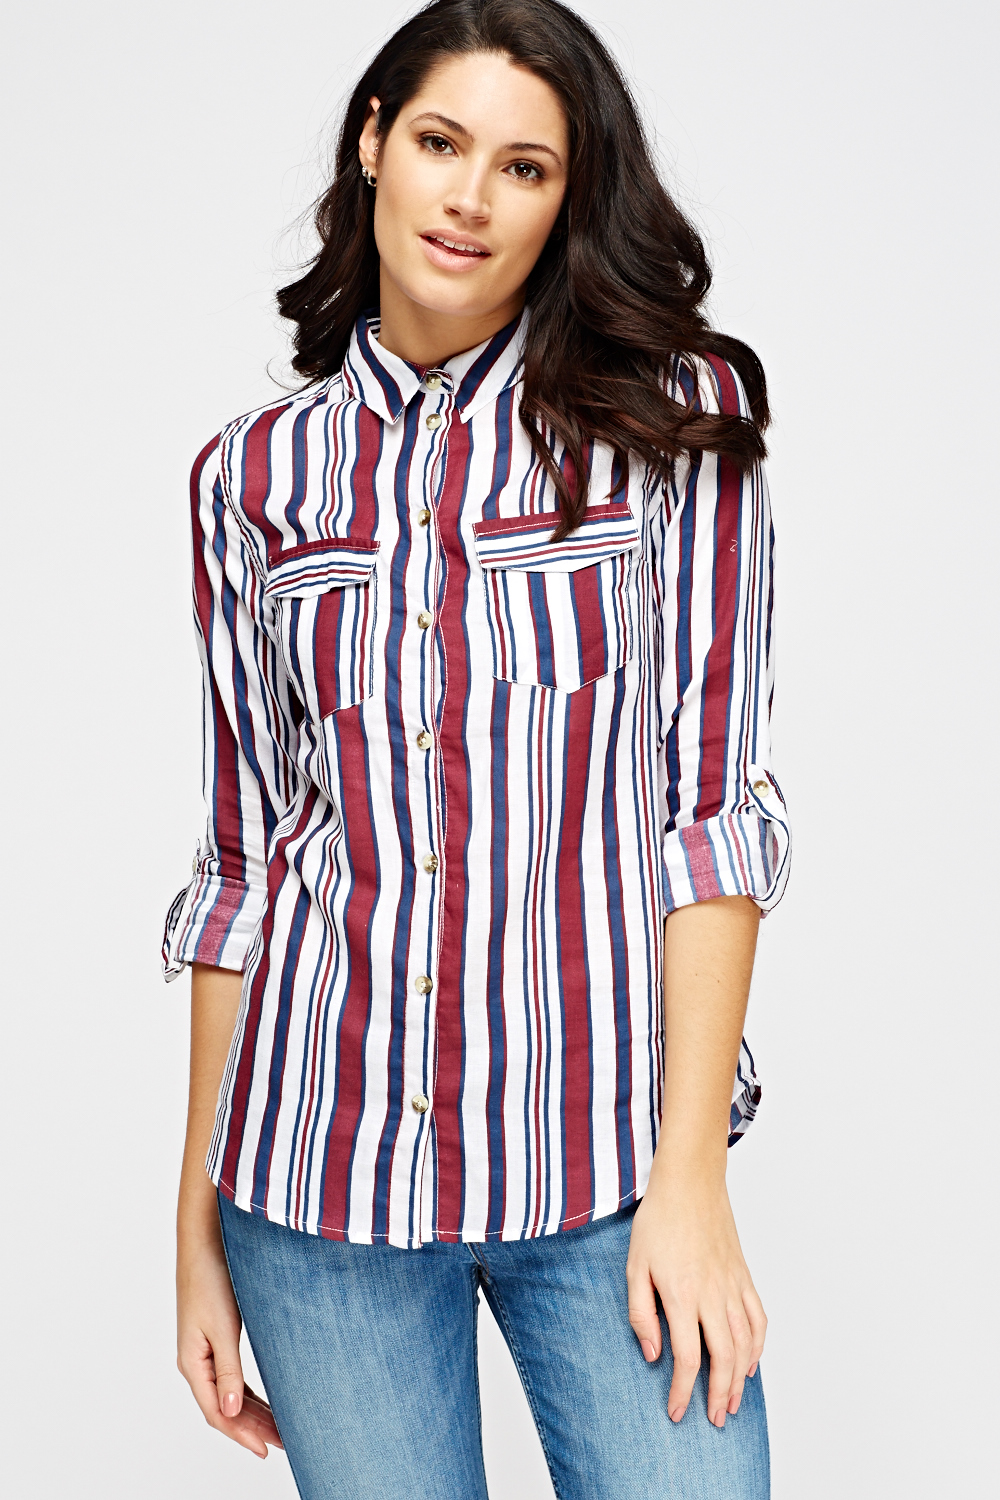 Striped Button Shirt - Just $7